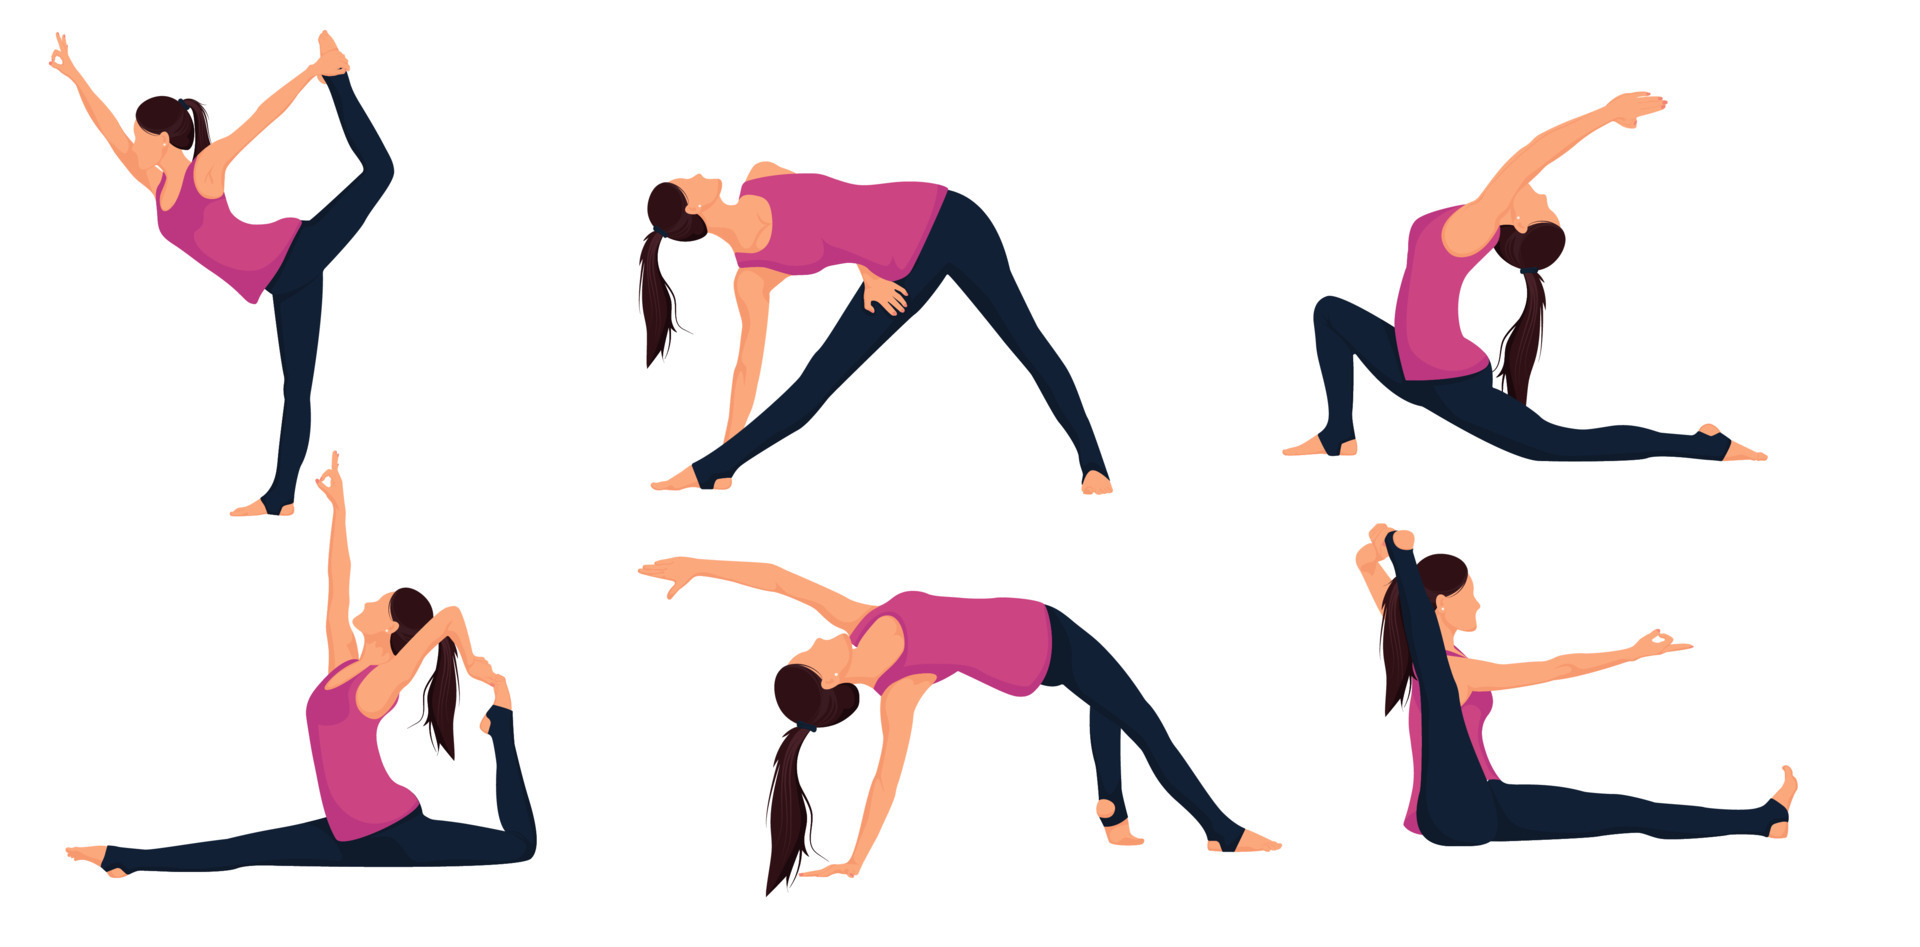 Mulher em pose de estocada garota fazendo exercícios de pilates e ioga no  tapete estilo de vida saudável ilustração vetorial de treino